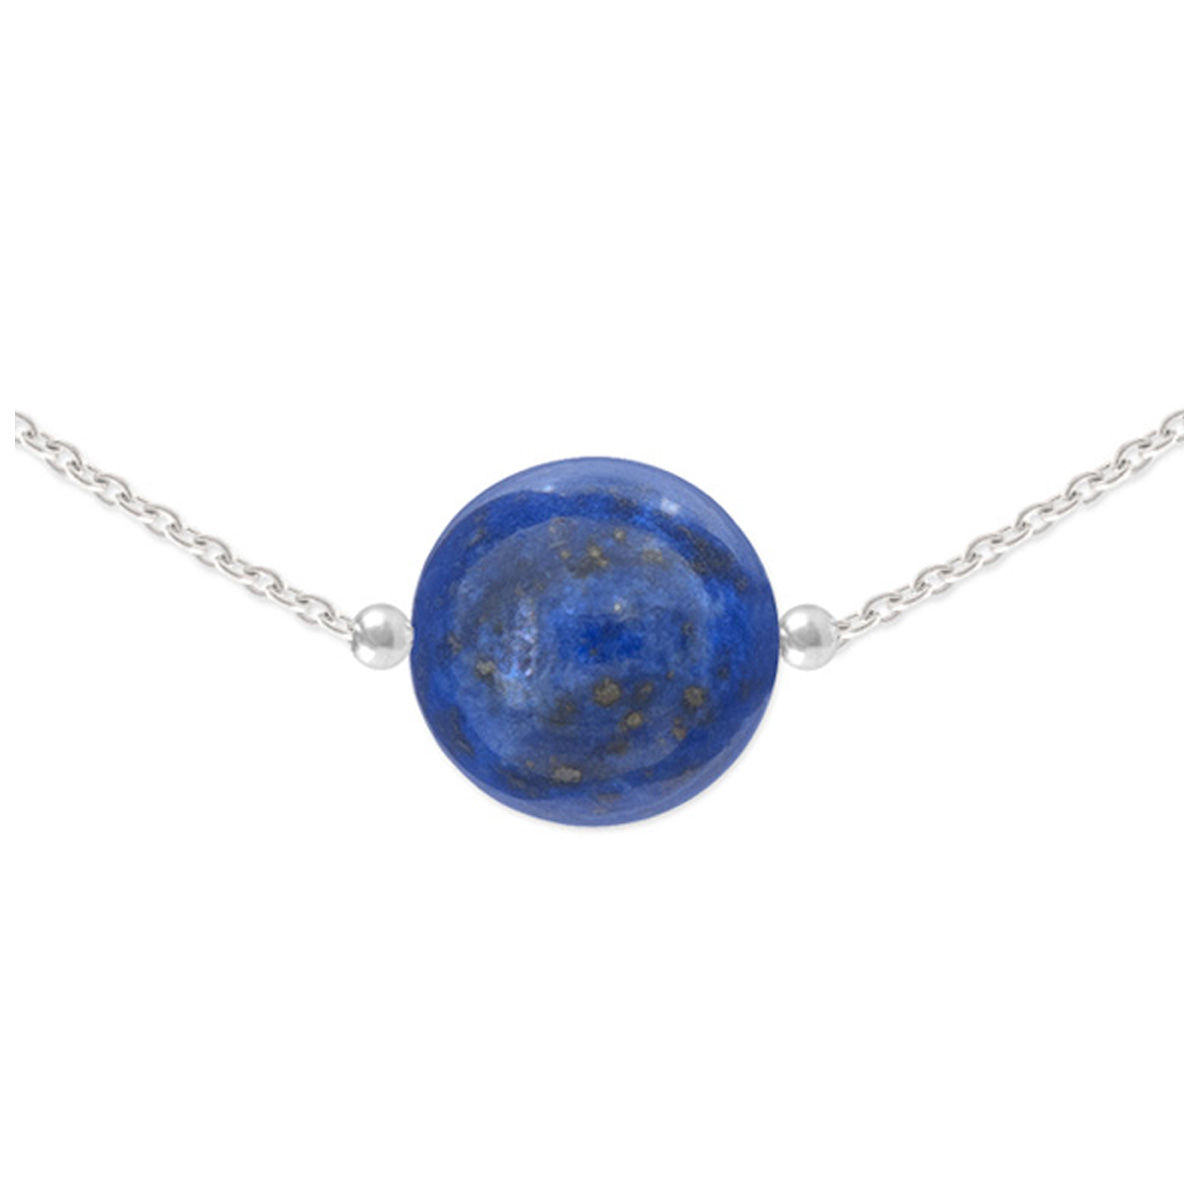 Collier argent artisanal \'Mineralia\' lapis lazuli argenté - 10 mm - [R1028]